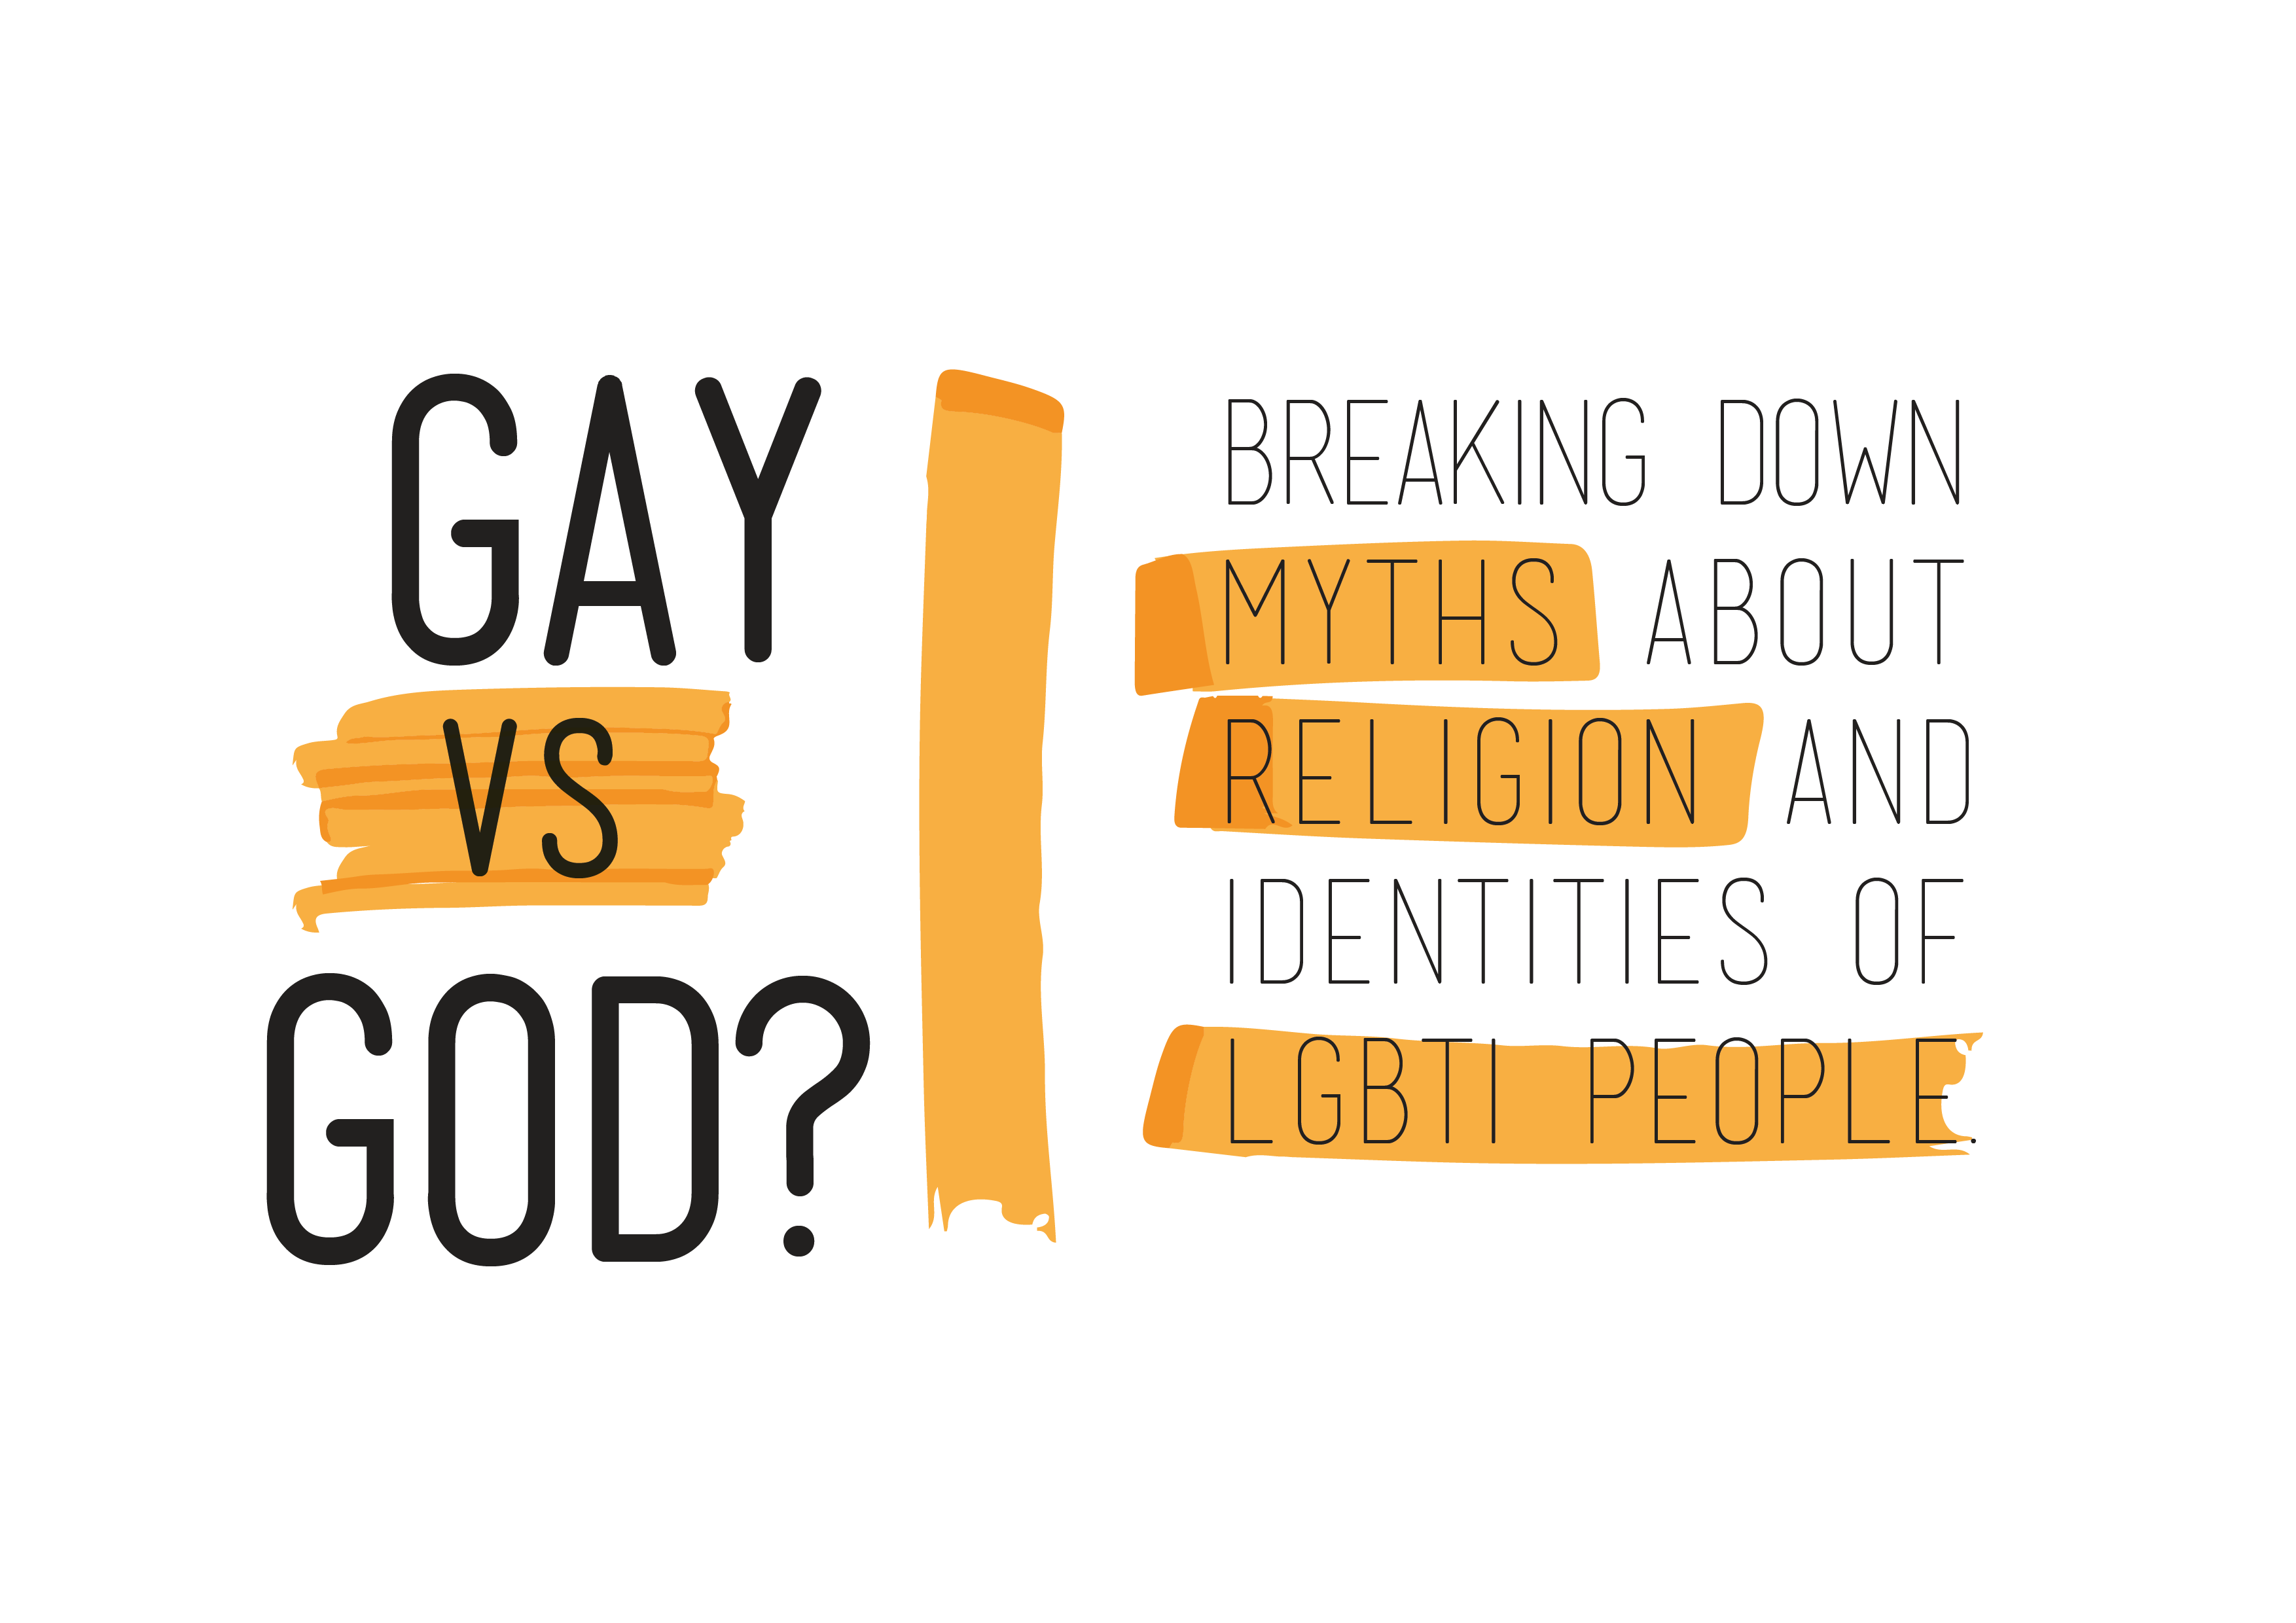 Gay_vs God_logo_ religione_LGBT